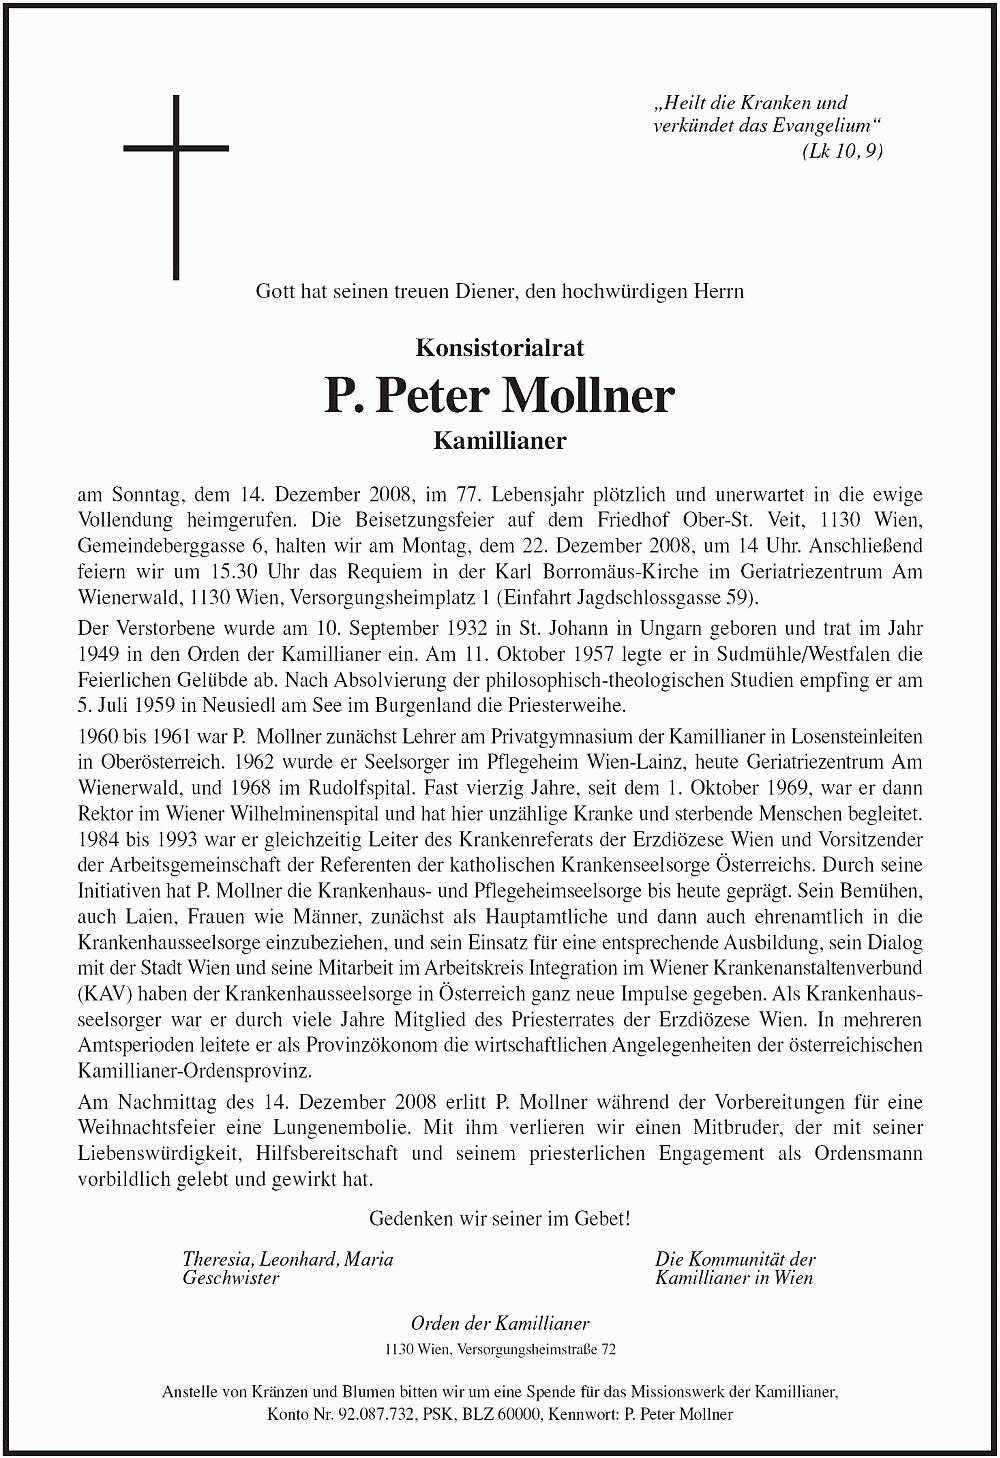 (Todesanzeige) Parte für Pater Peter Mollner